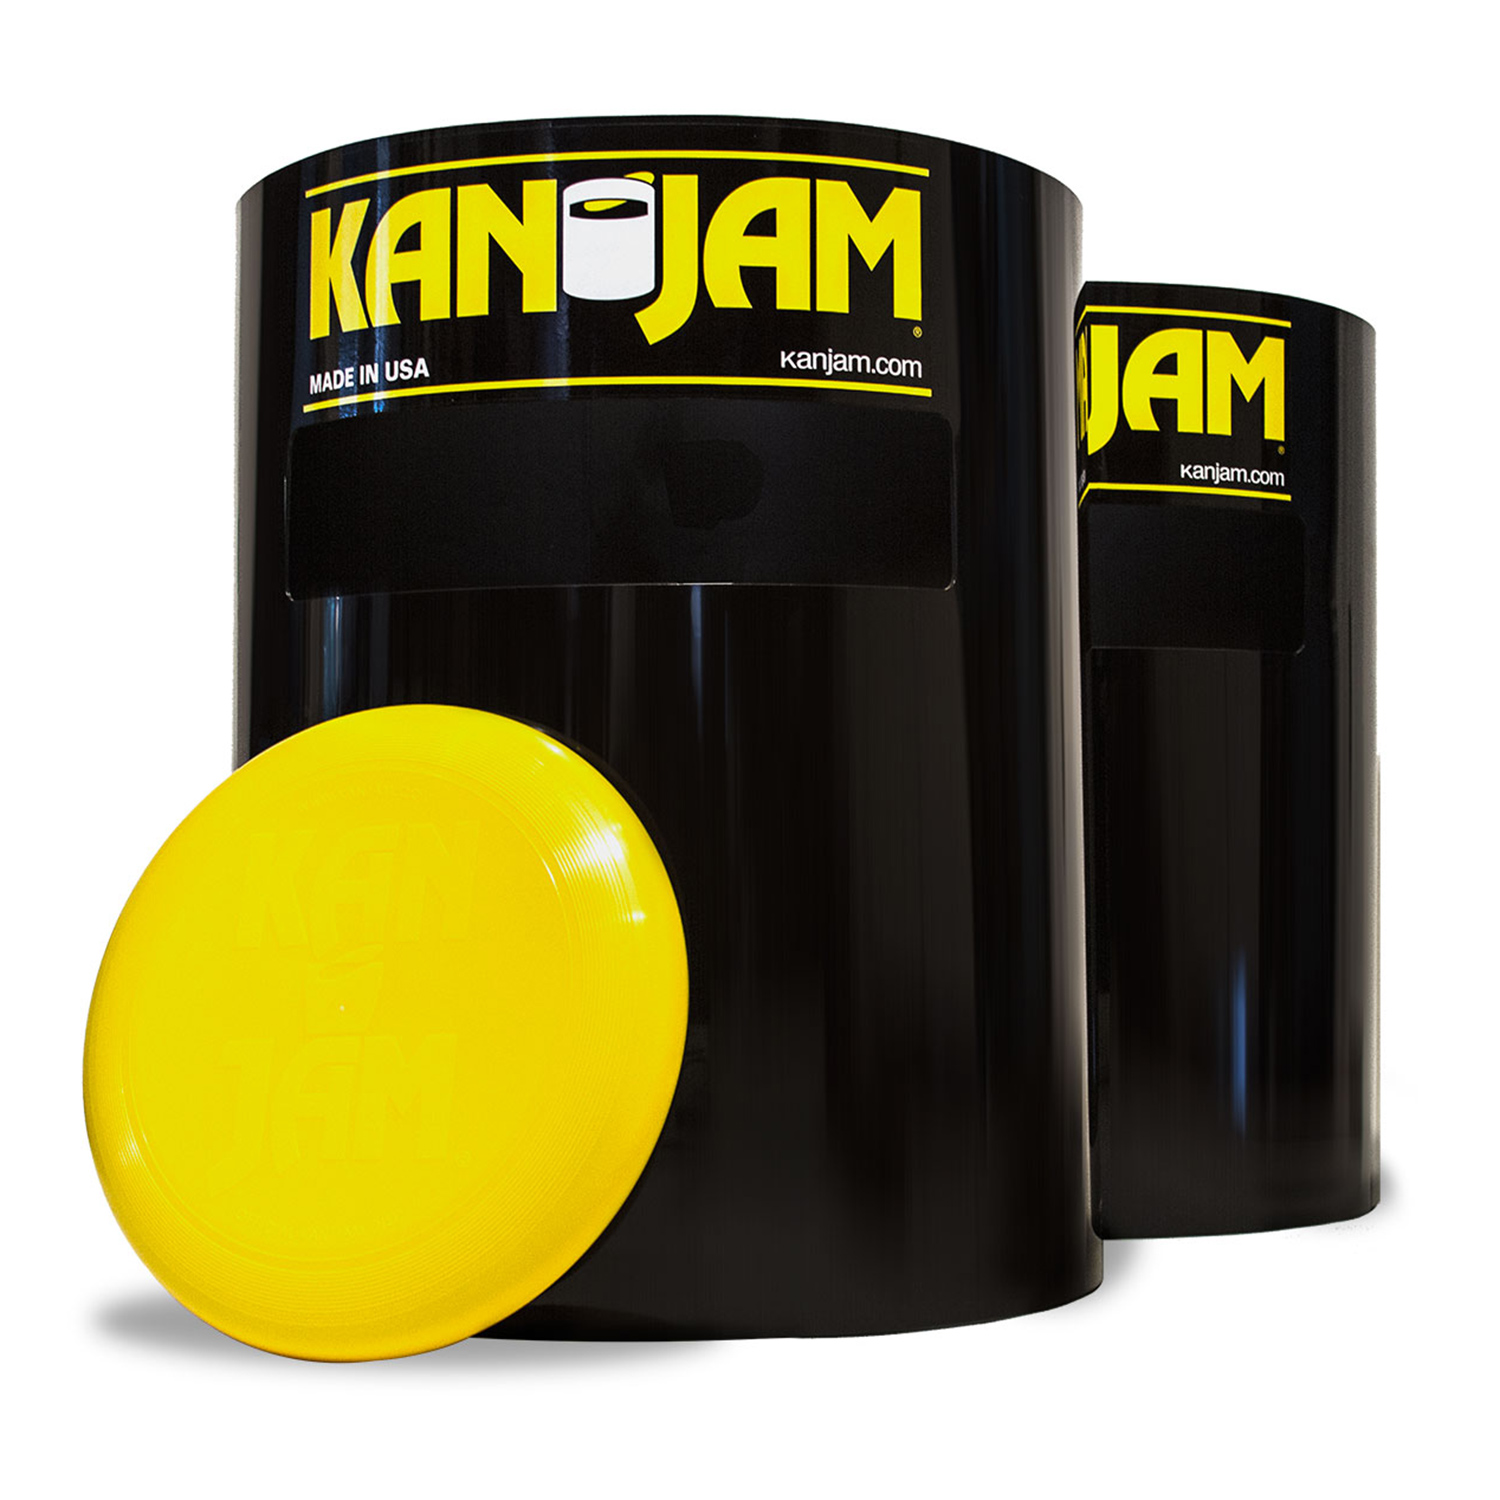 KanJam original game set